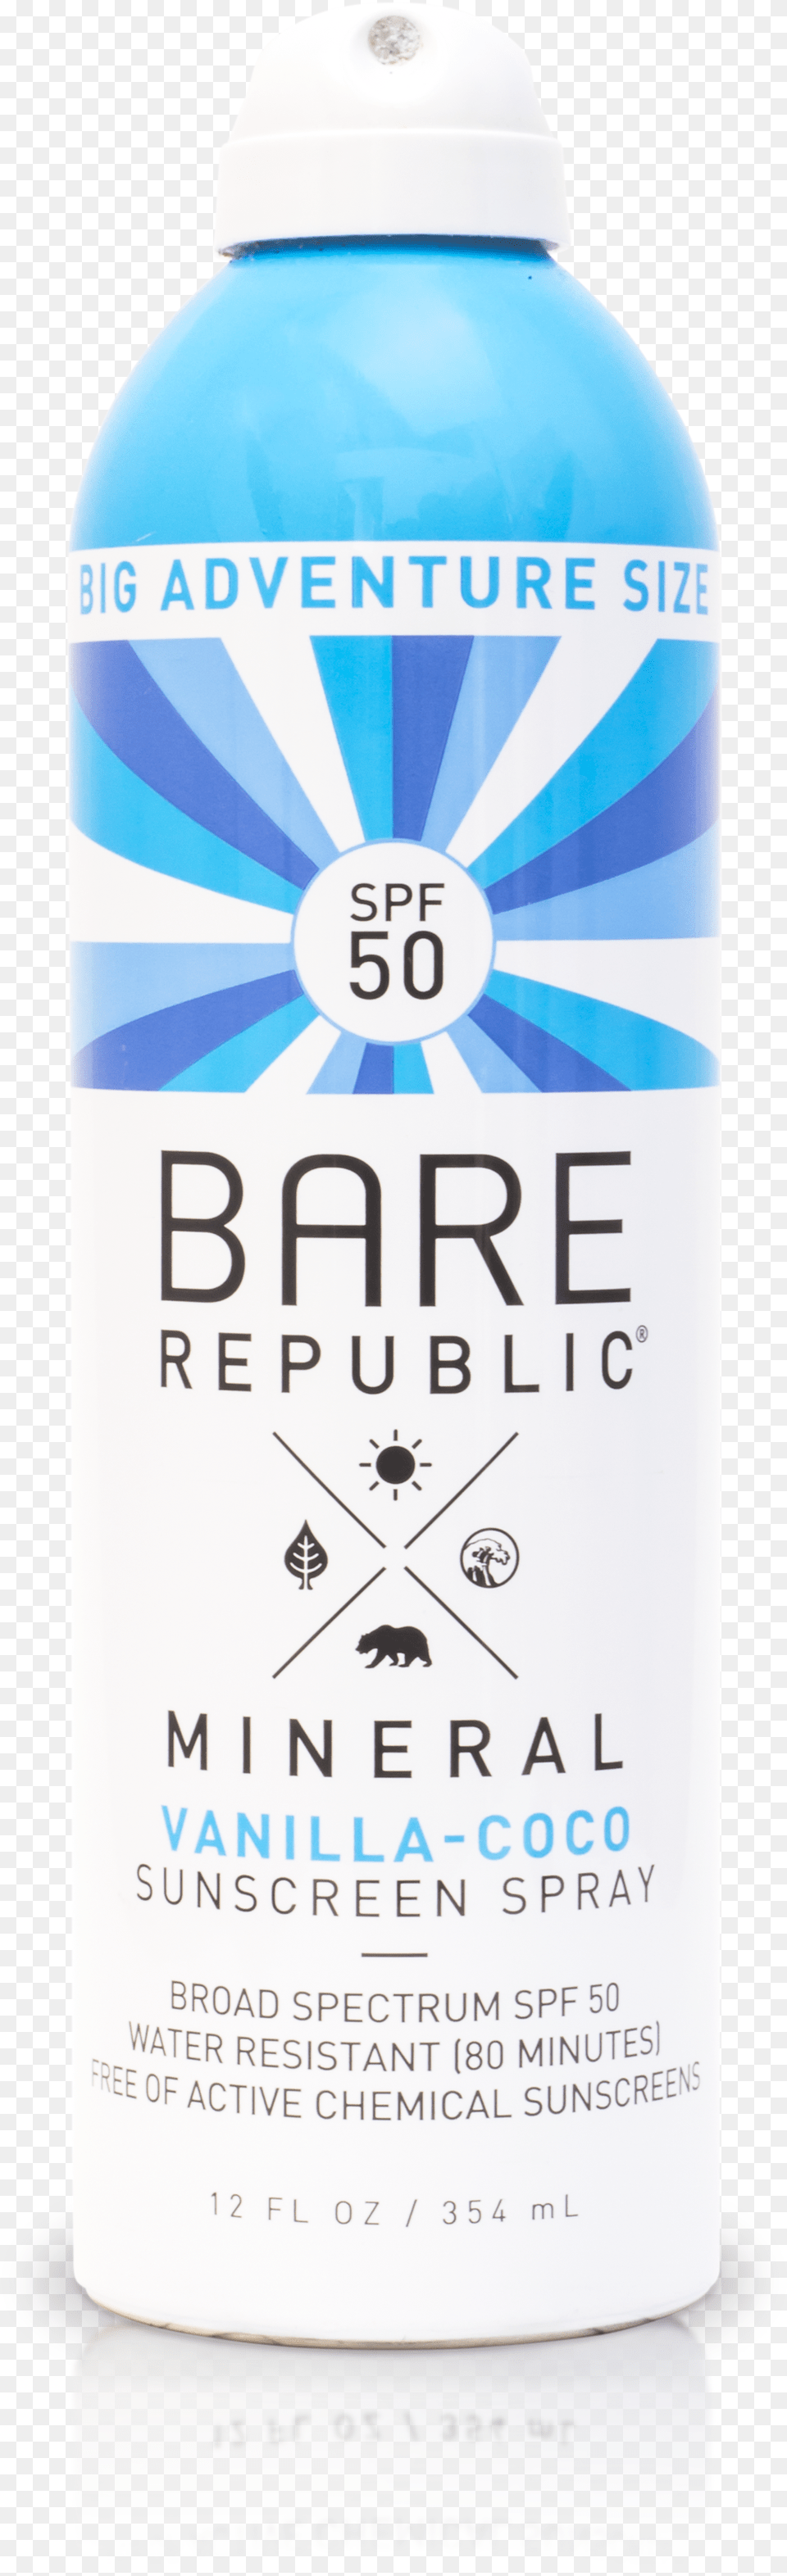 Bare Republic Mineral Spf 50 Vanilla Coco Sunscreen Plastic Bottle, Cosmetics, Tin Free Png Download